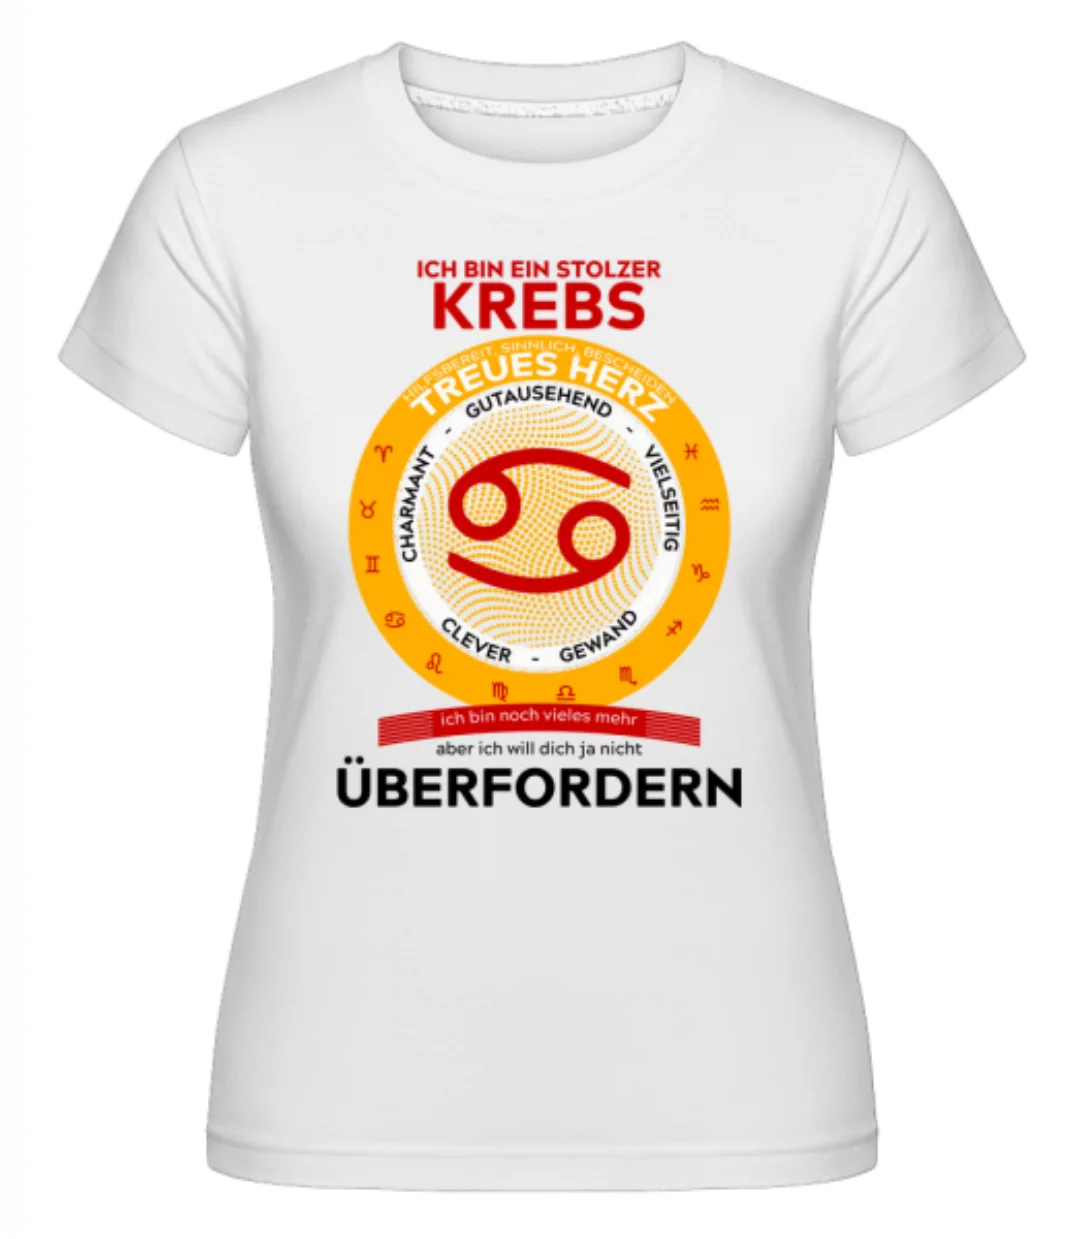 Kebs Treues Herz · Shirtinator Frauen T-Shirt günstig online kaufen